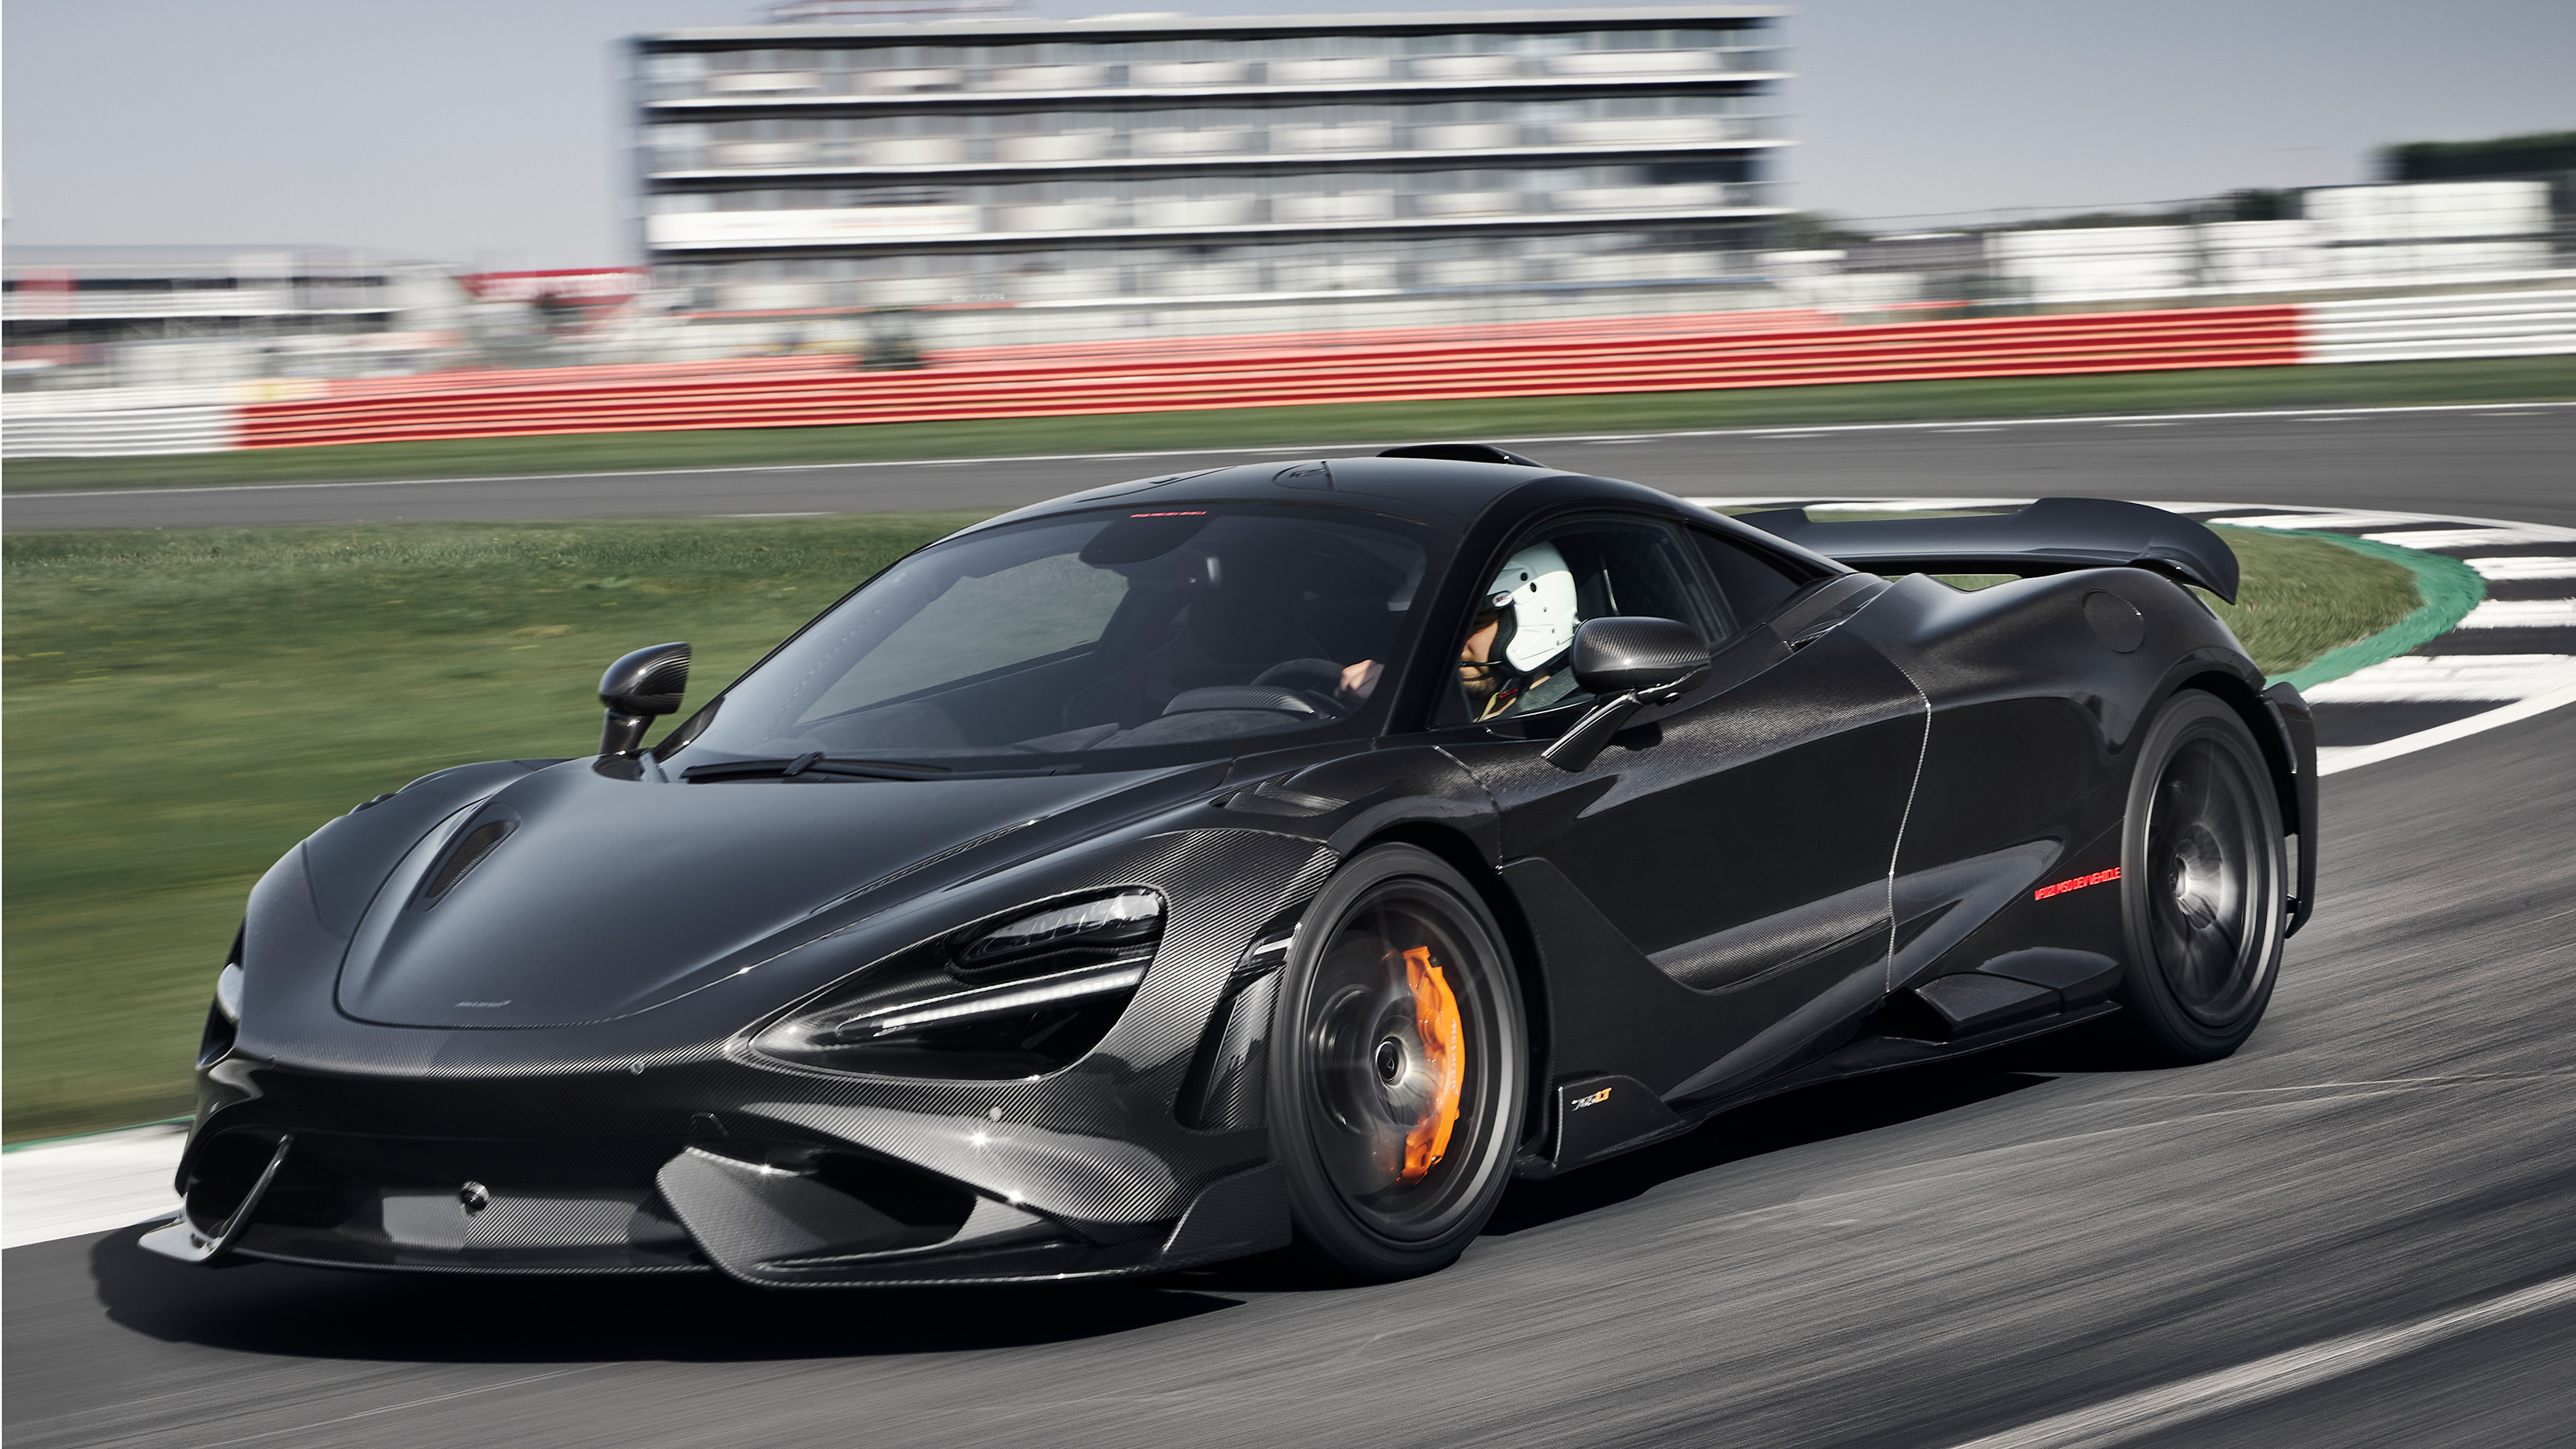 New 2020 McLaren 765LT price and specs confirmed Auto